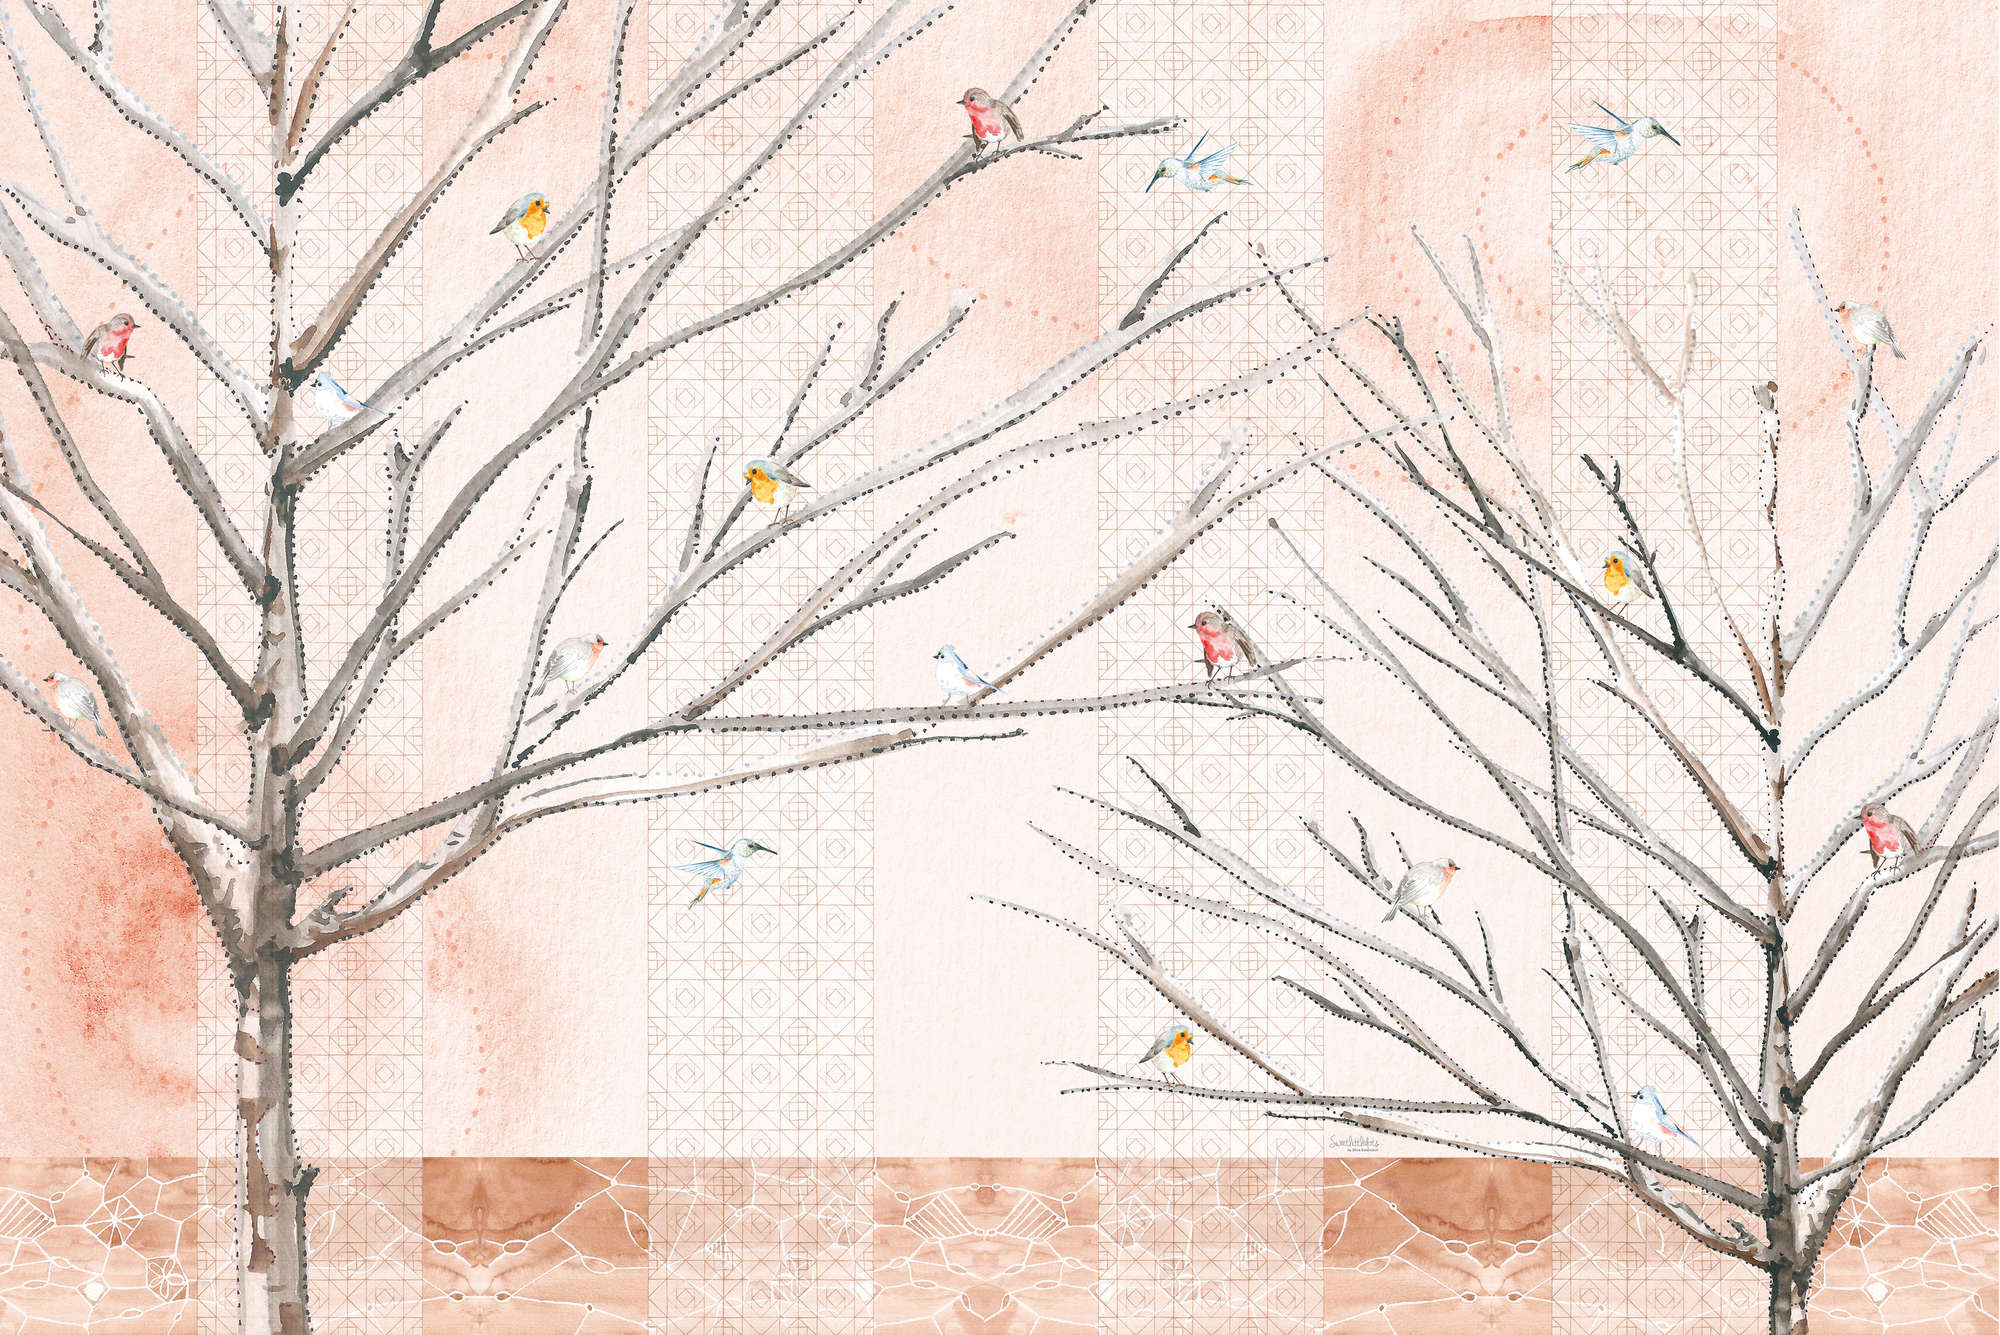             Papier peint artistique Arbres avec oiseaux en beige et marron sur intissé lisse nacré
        